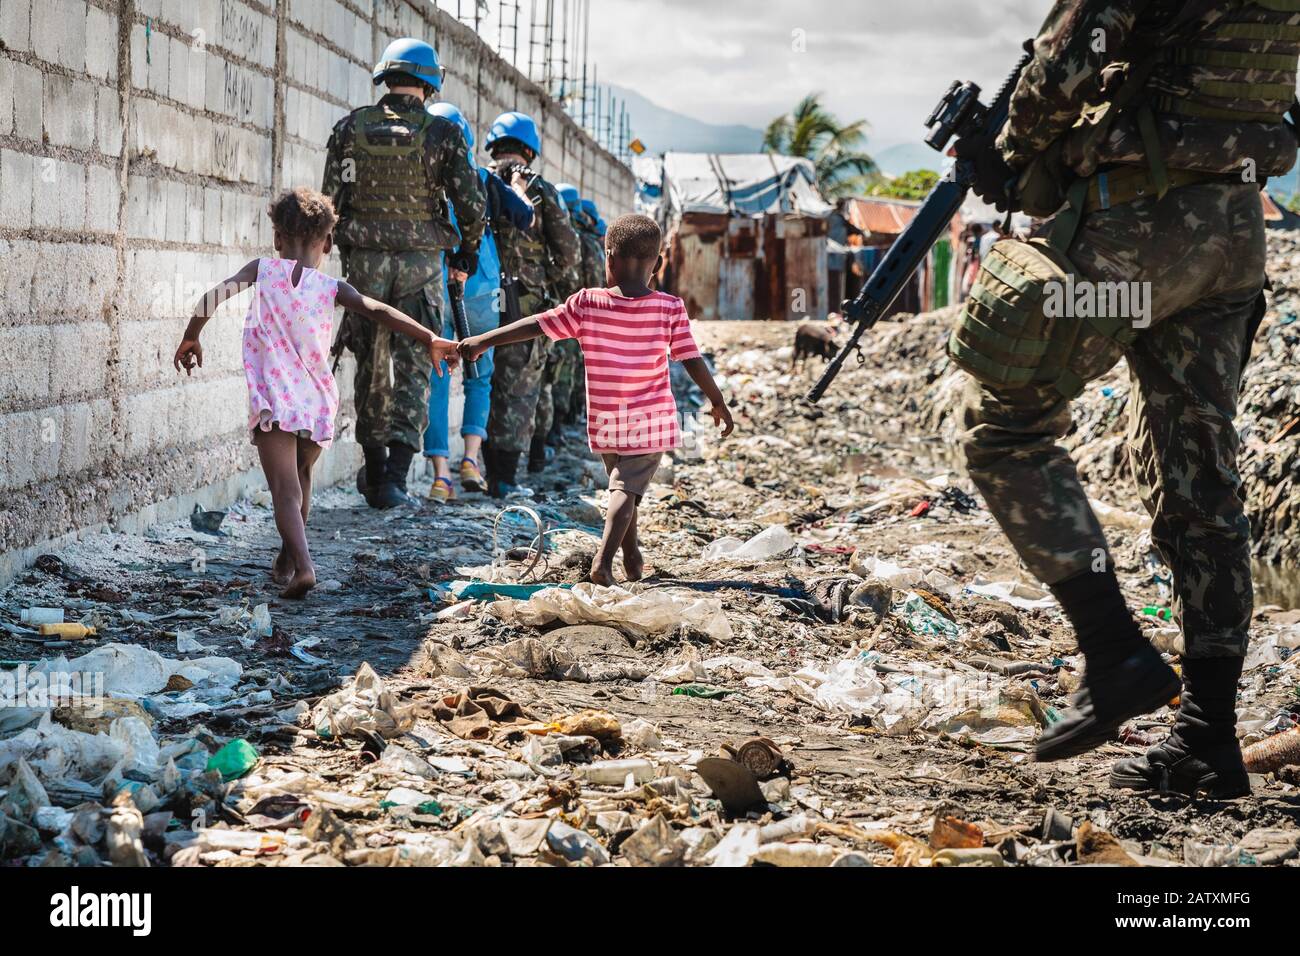 Deux enfants et une patrouille des Nations Unies, casques bleus, promenade dans les ordures, Cité Soleil, Port-au-Prince, Ouest, Haïti Banque D'Images